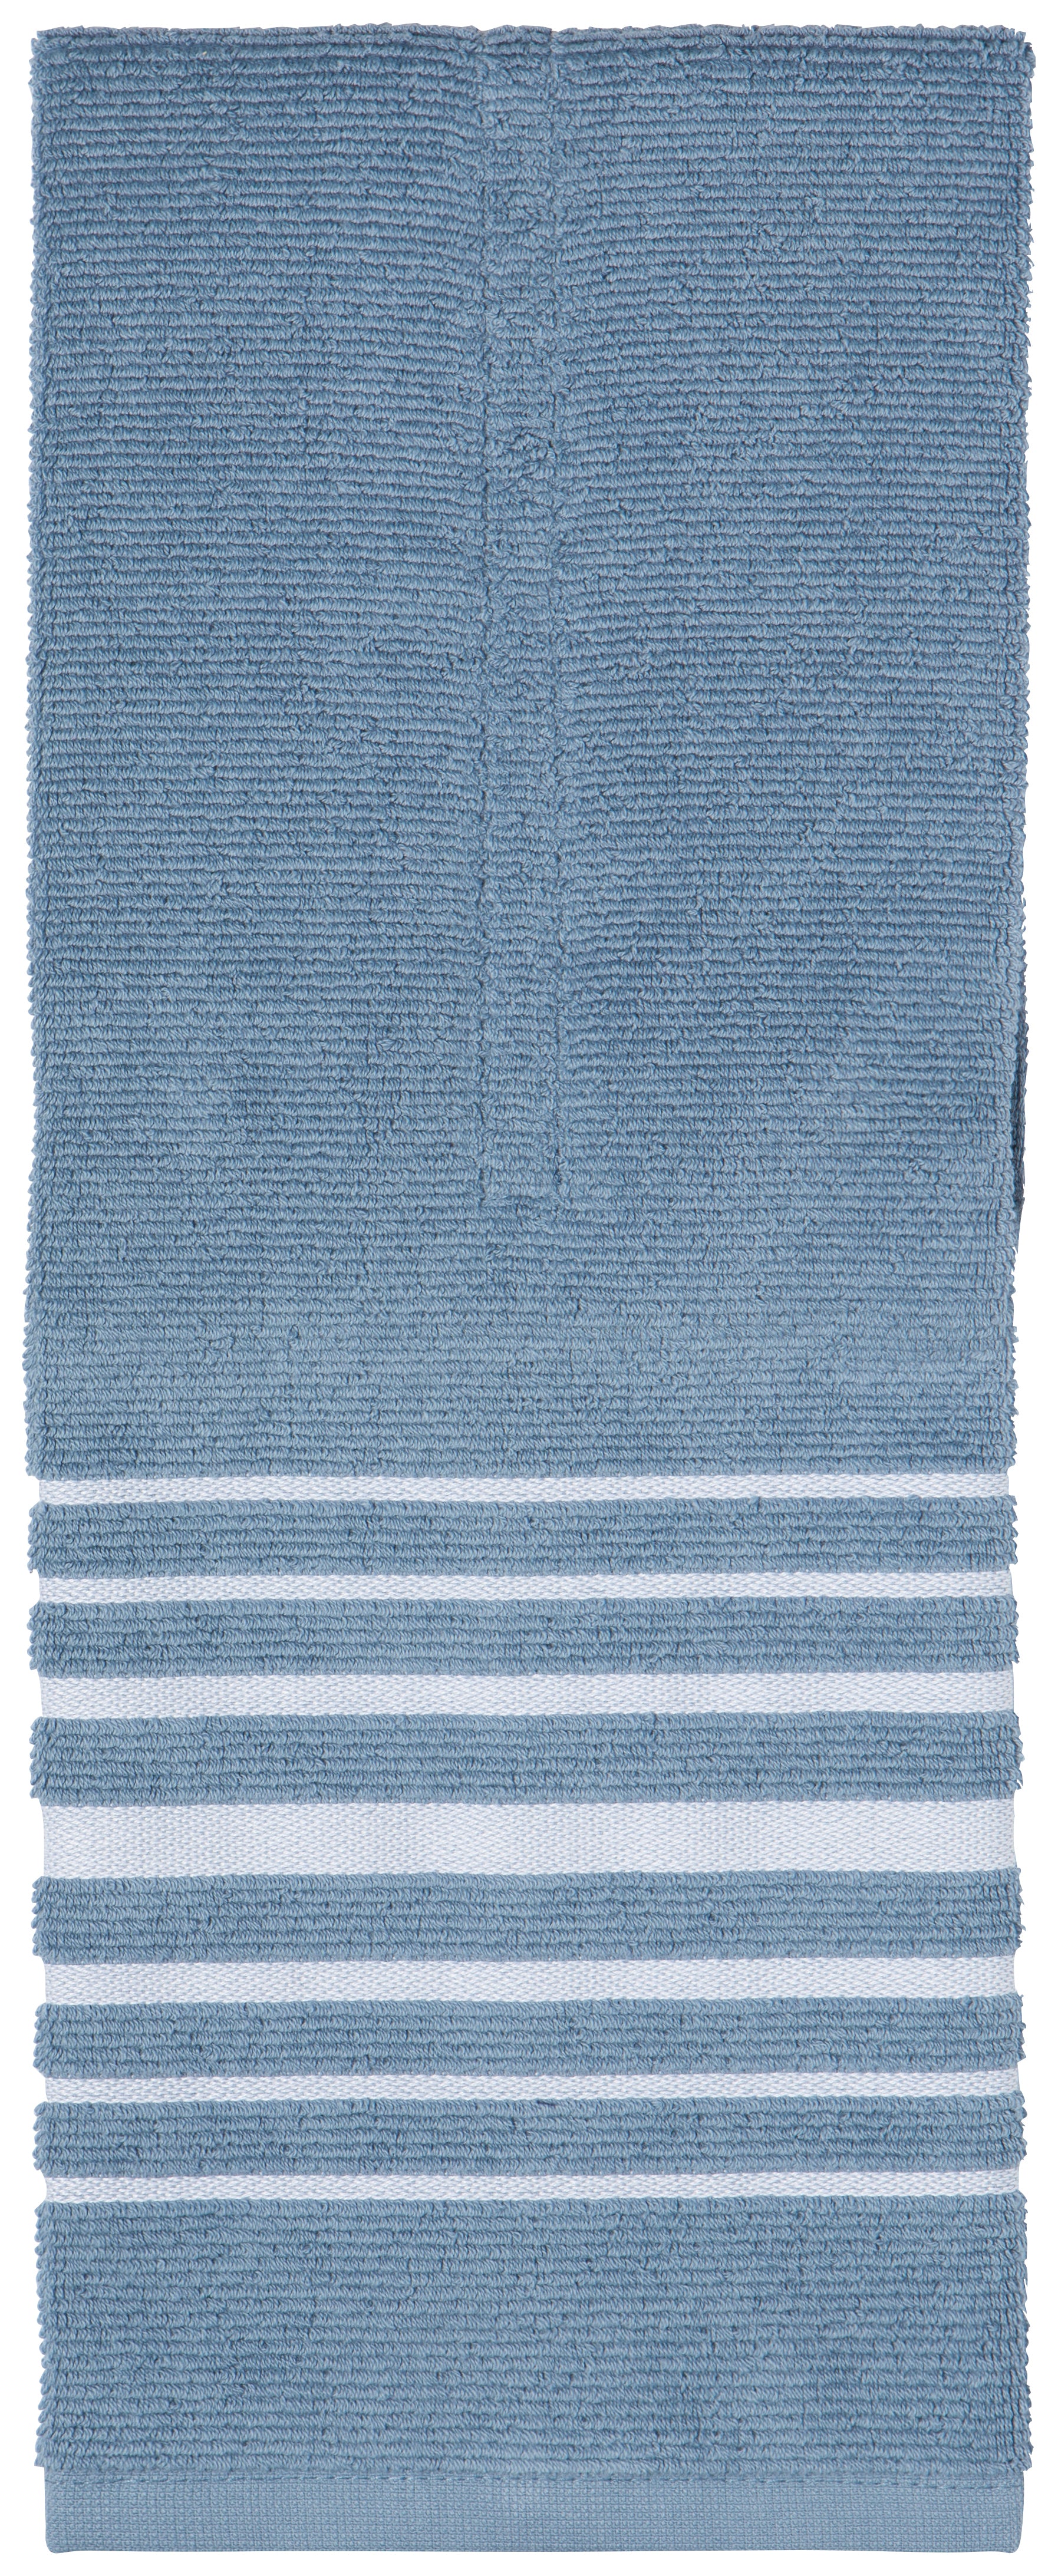 Slate Blue Hang-up Kitchen Towel